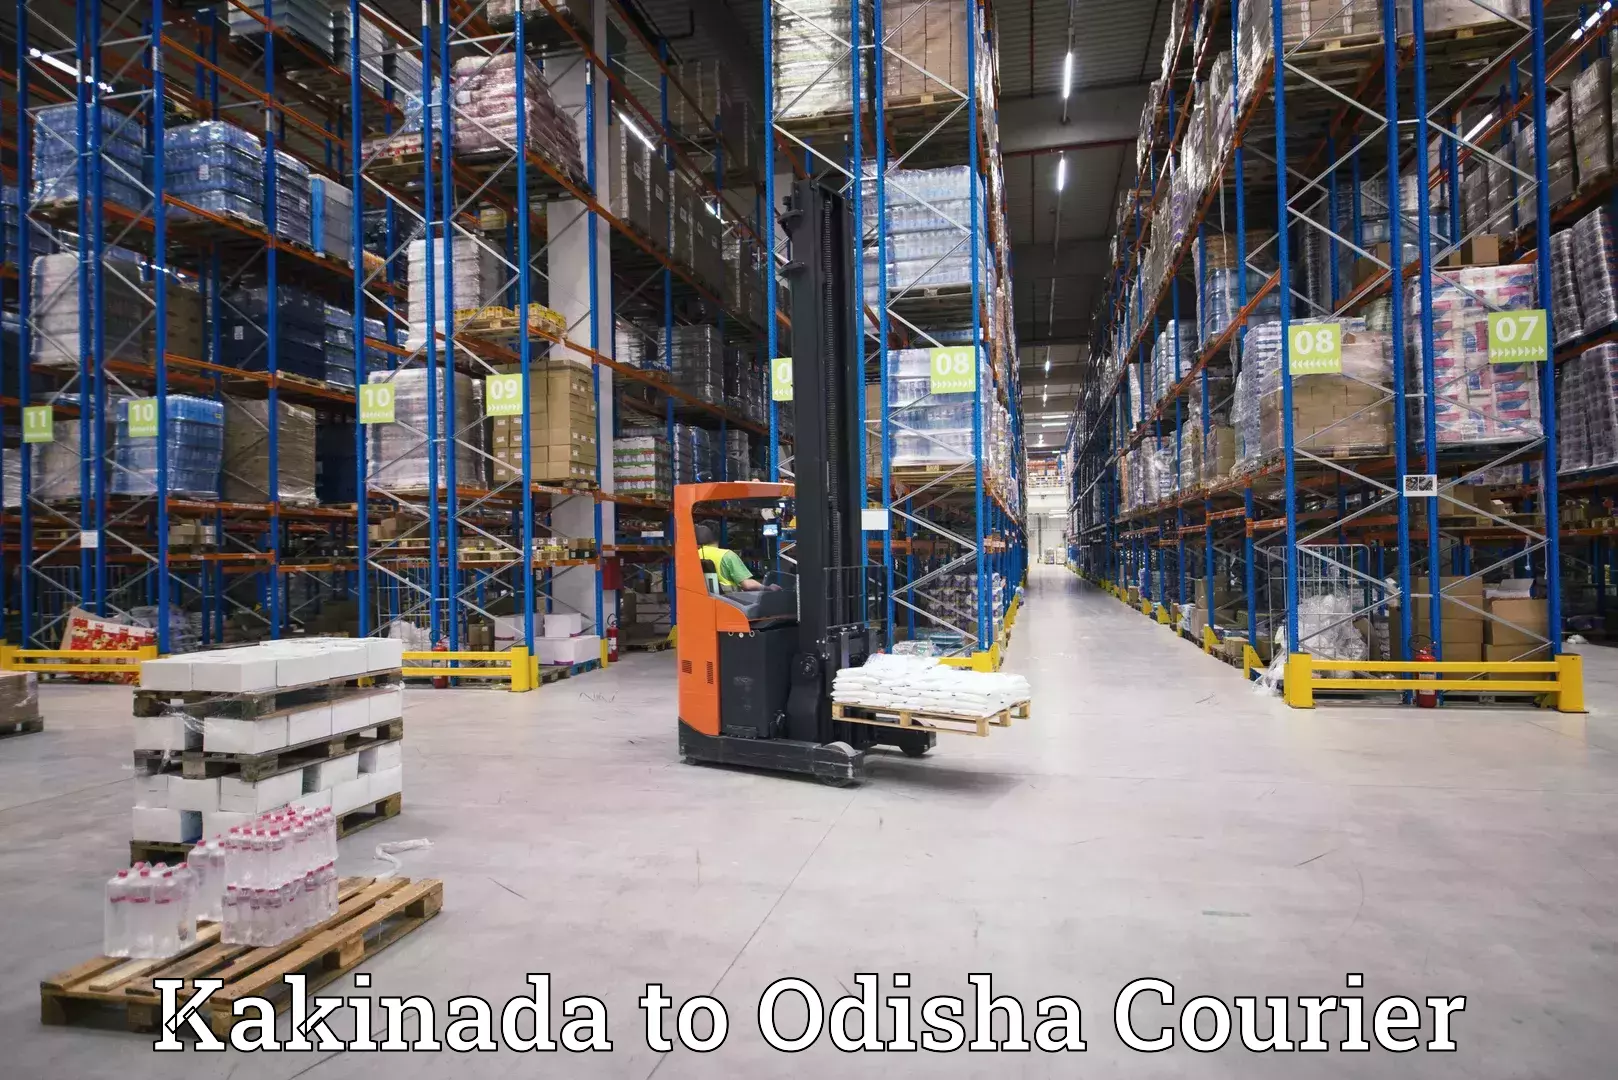 Smart shipping technology Kakinada to Paikana